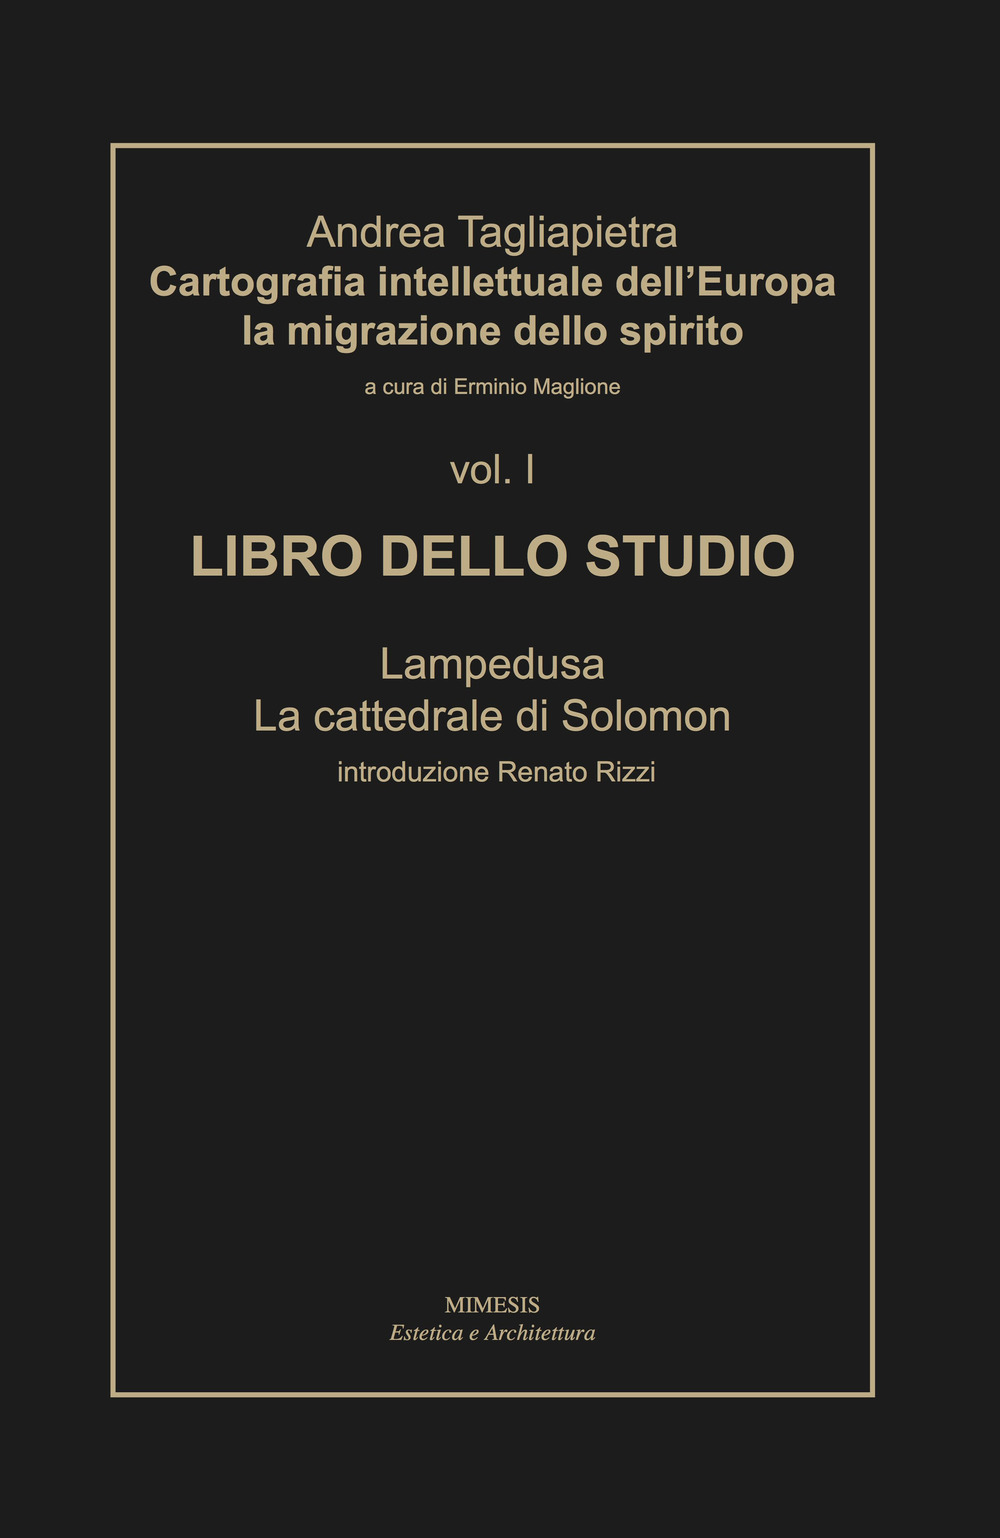 Cartografia intellettuale dell'Europa. La migrazione dello spirito. Vol. 1: Libro dello studio. Lampedusa. La cattedrale di Solomon